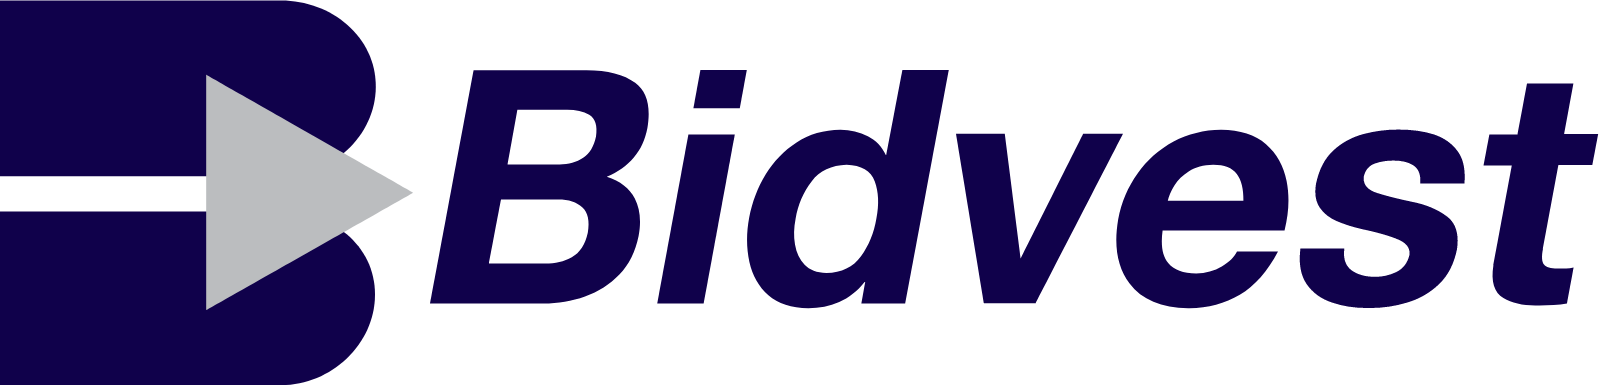 The Bidvest Group logo large (transparent PNG)